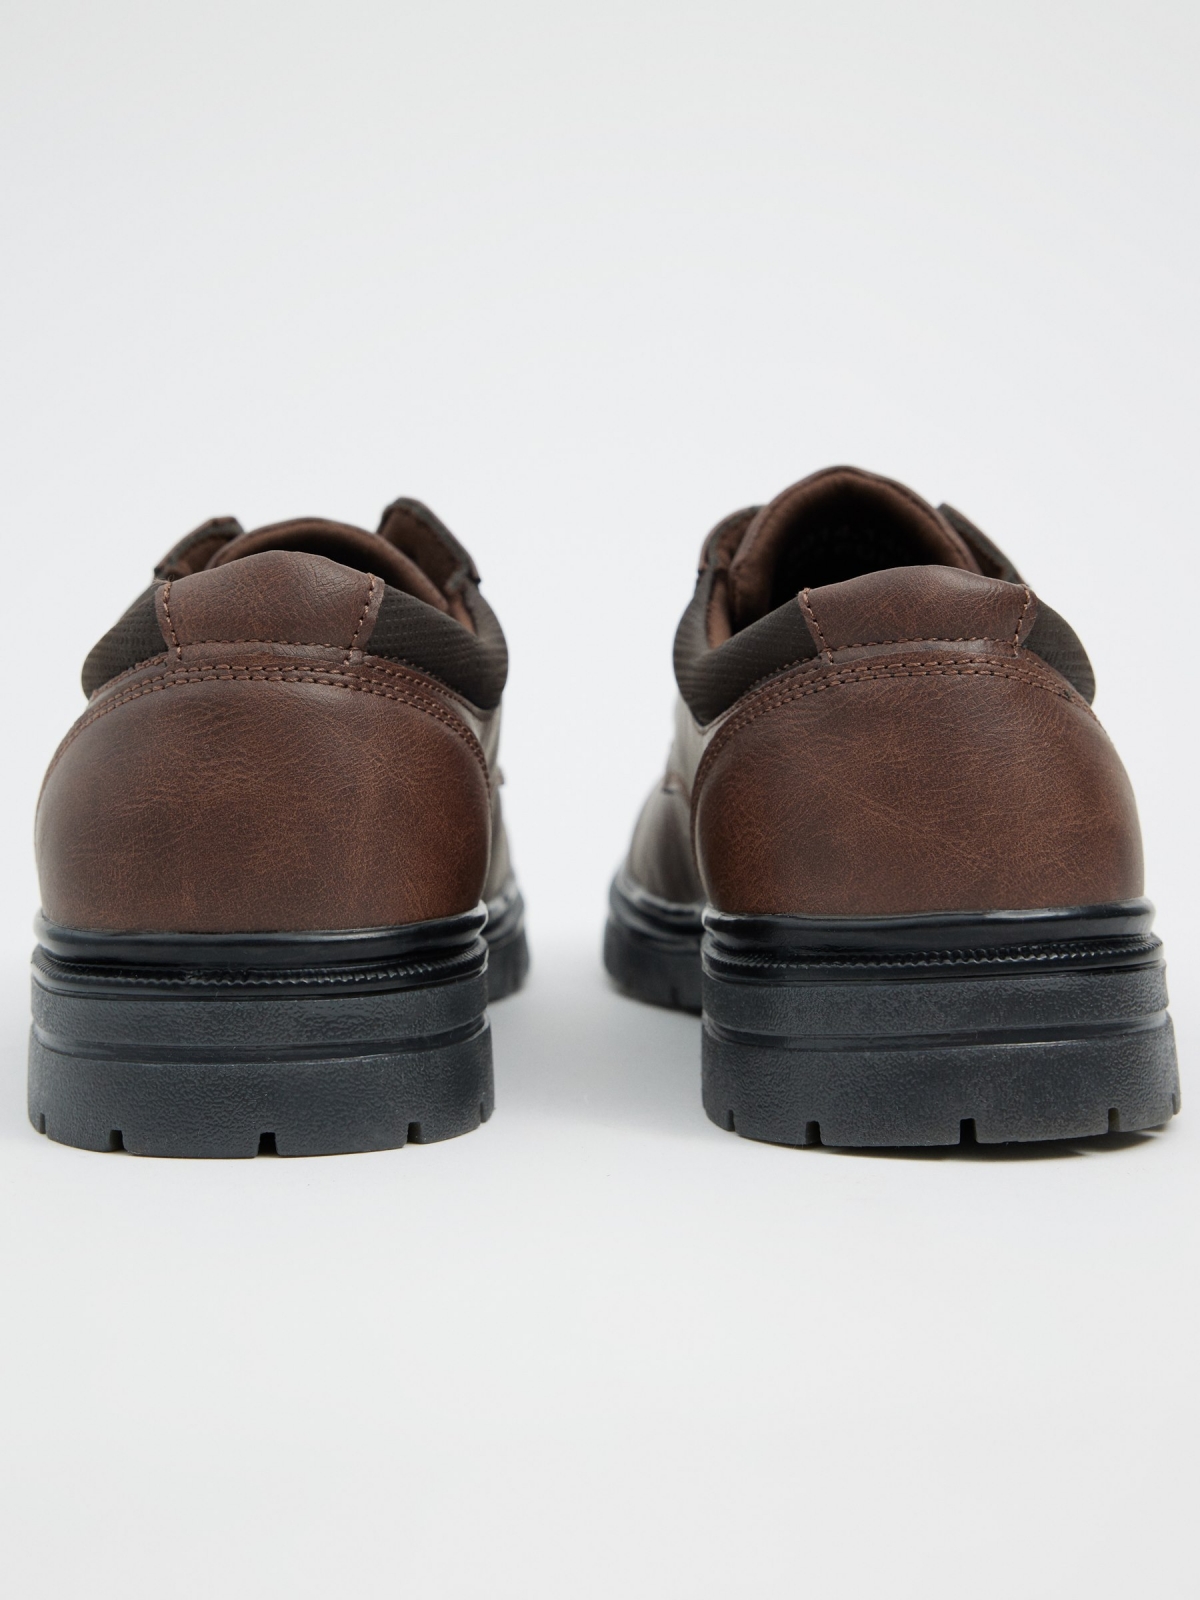 Zapato efecto piel marrón marrón tostado vista detalle